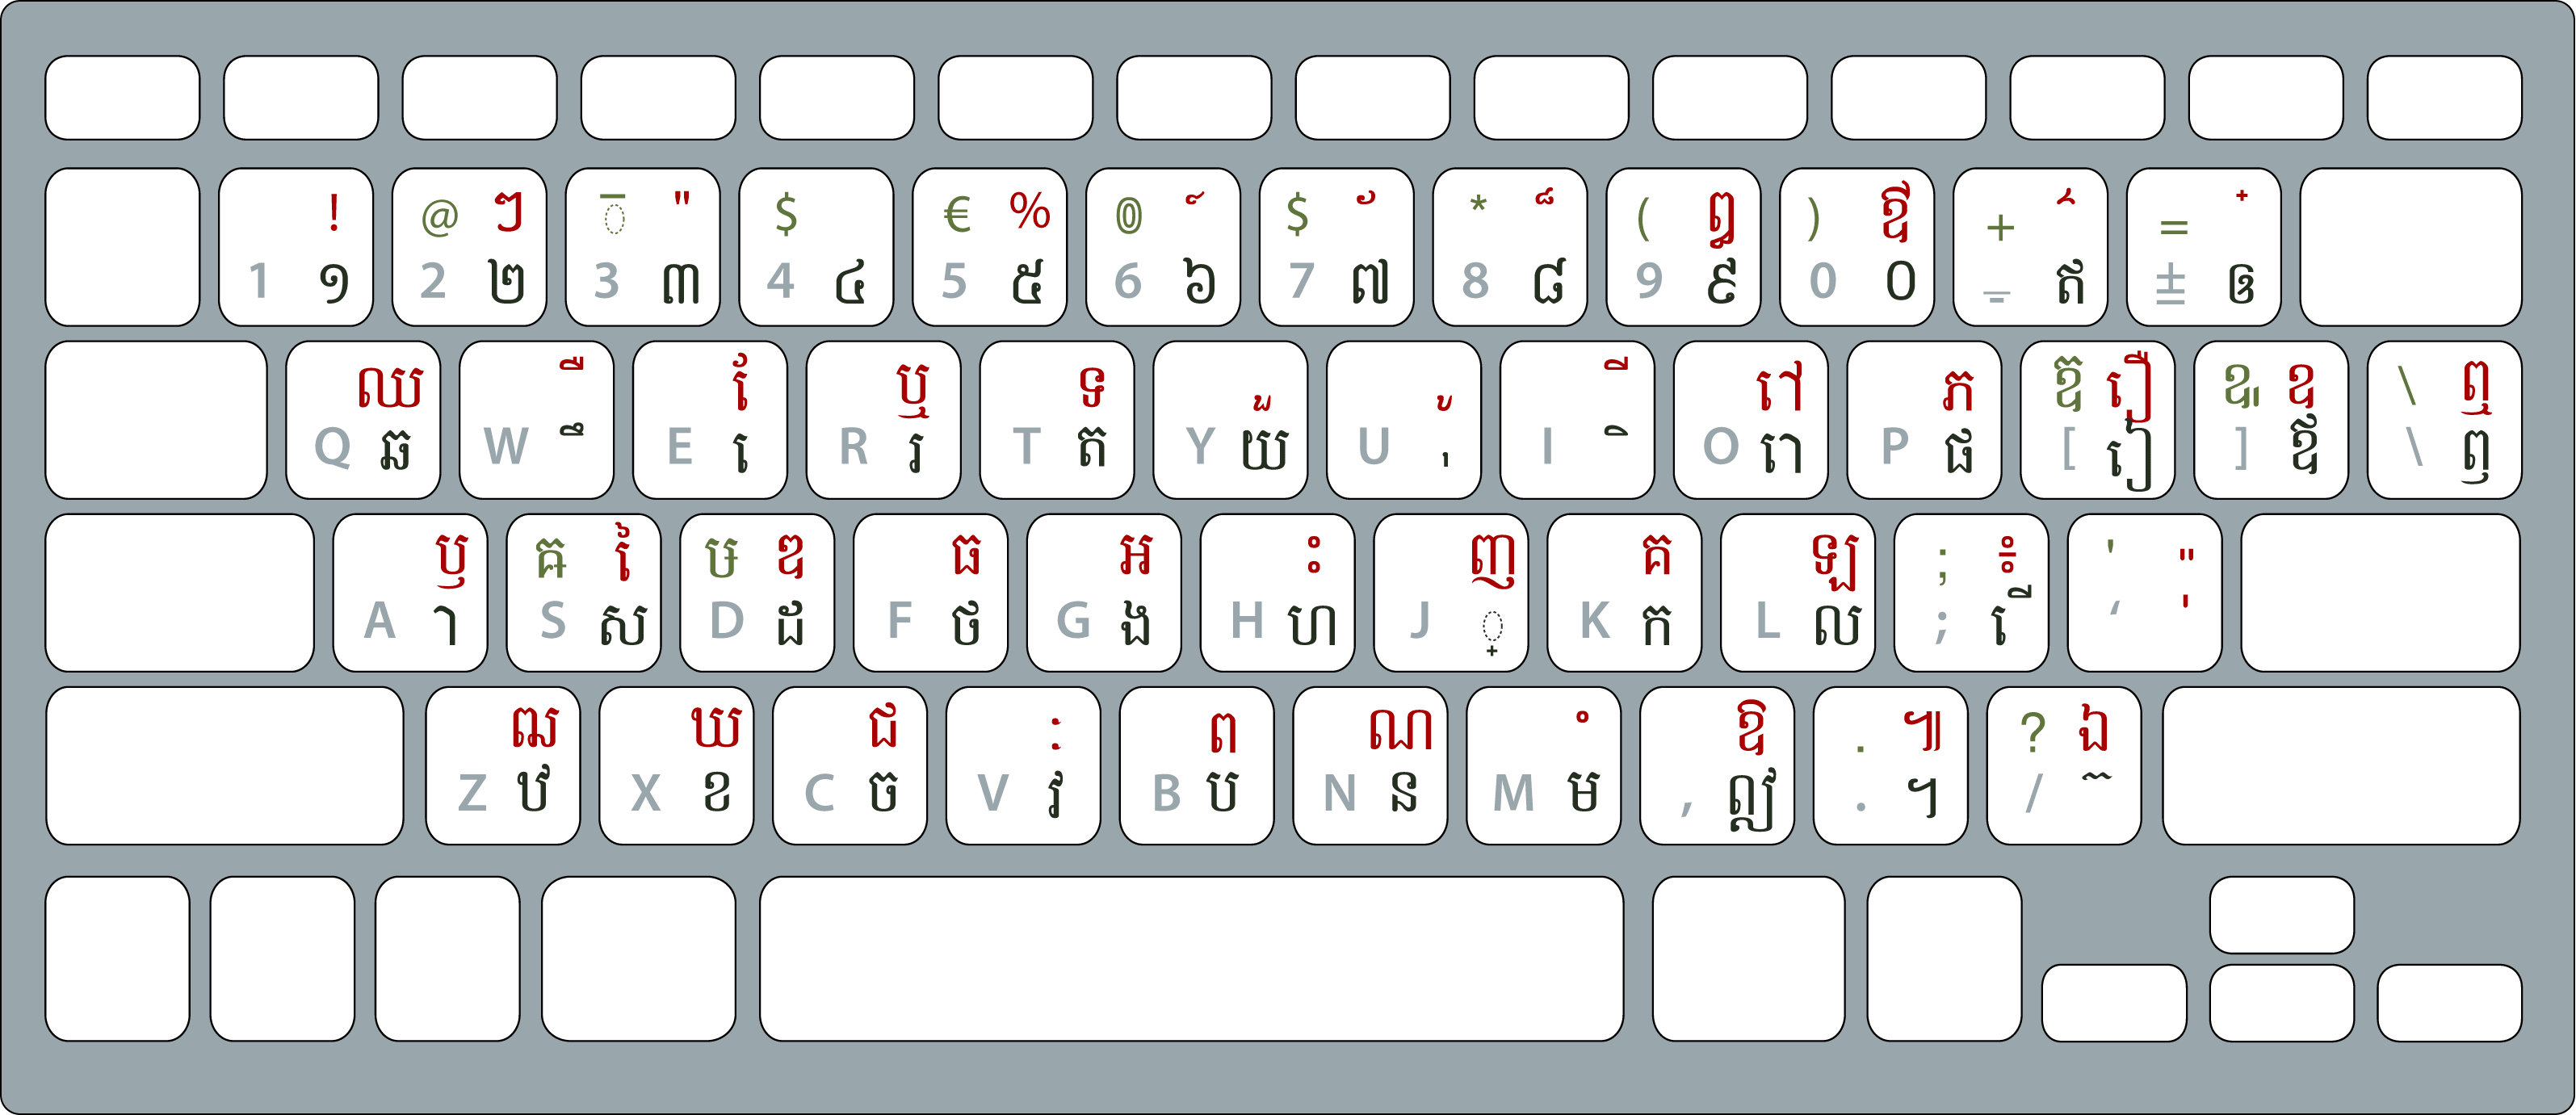 Khmer Alphabet Keyboard 1 